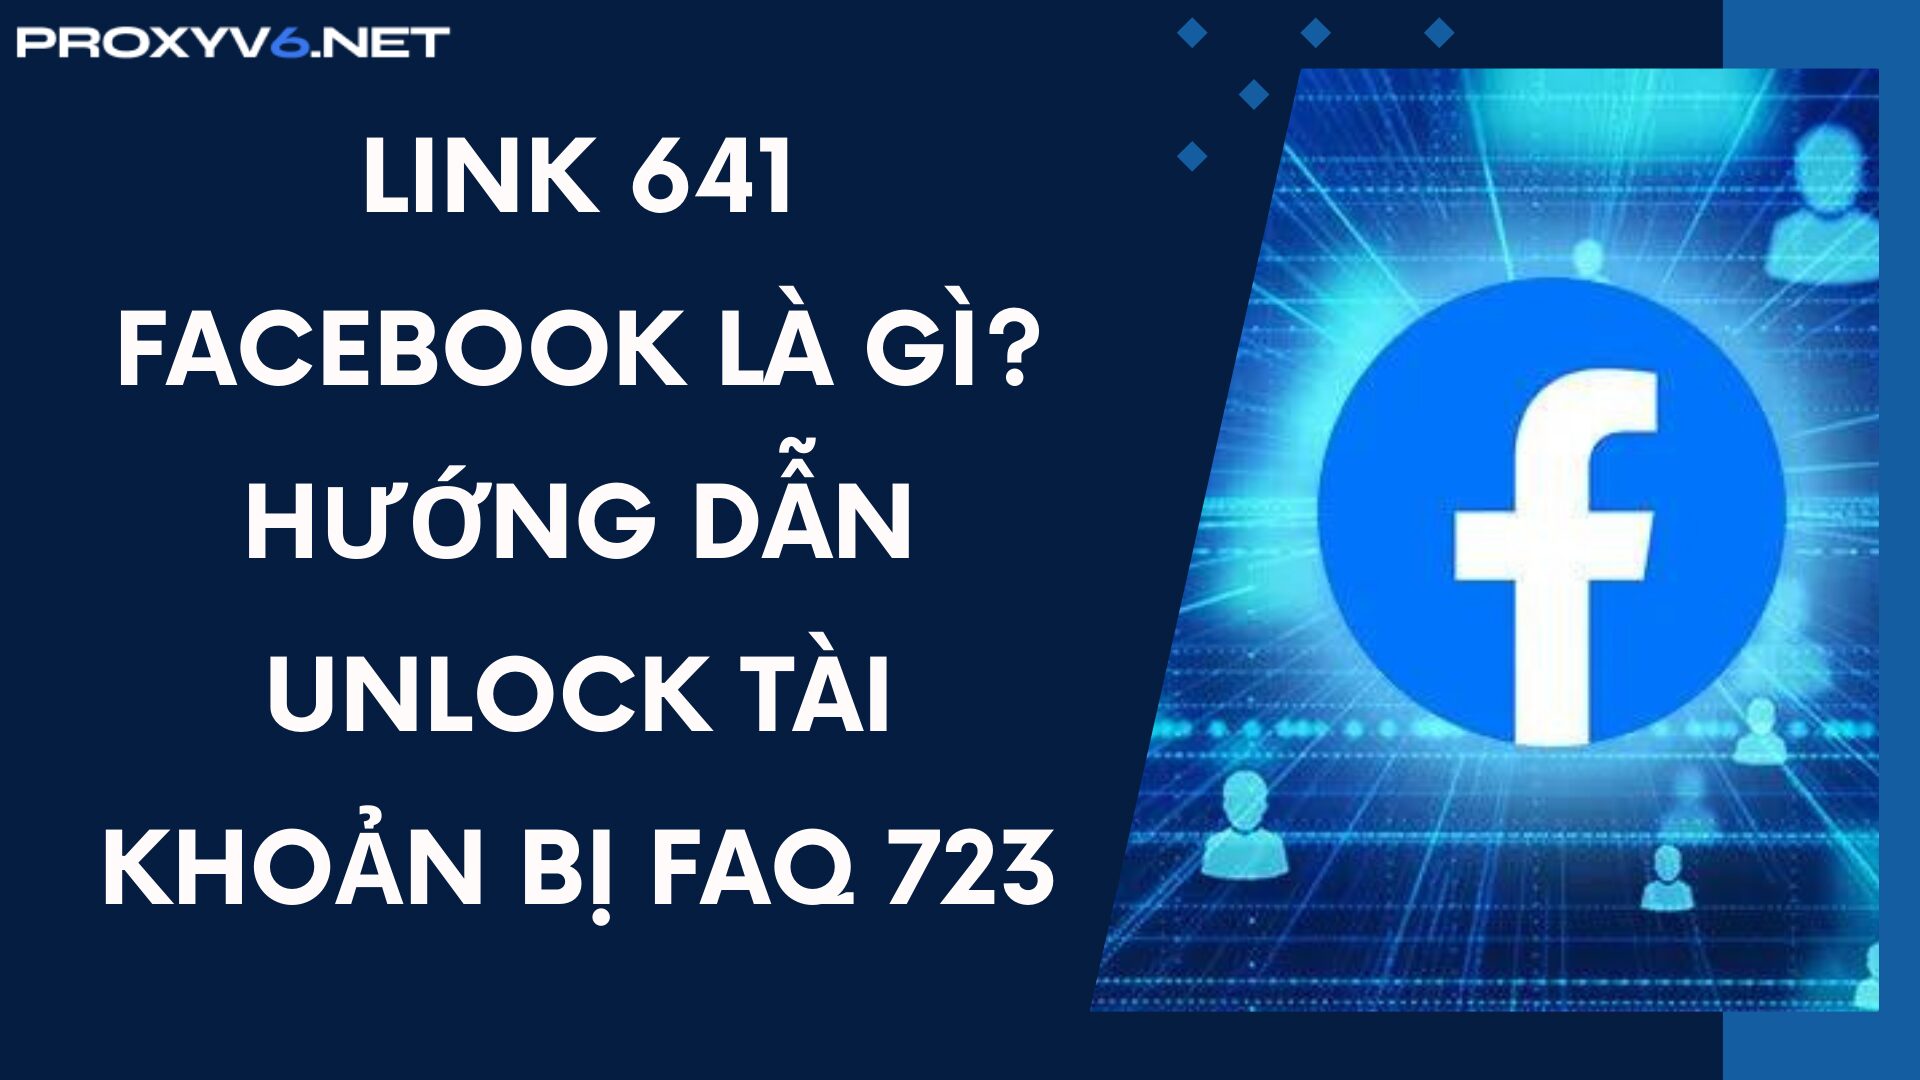 Link 641 Facebook là gì? Hướng dẫn unlock tài khoản bị FAQ 723